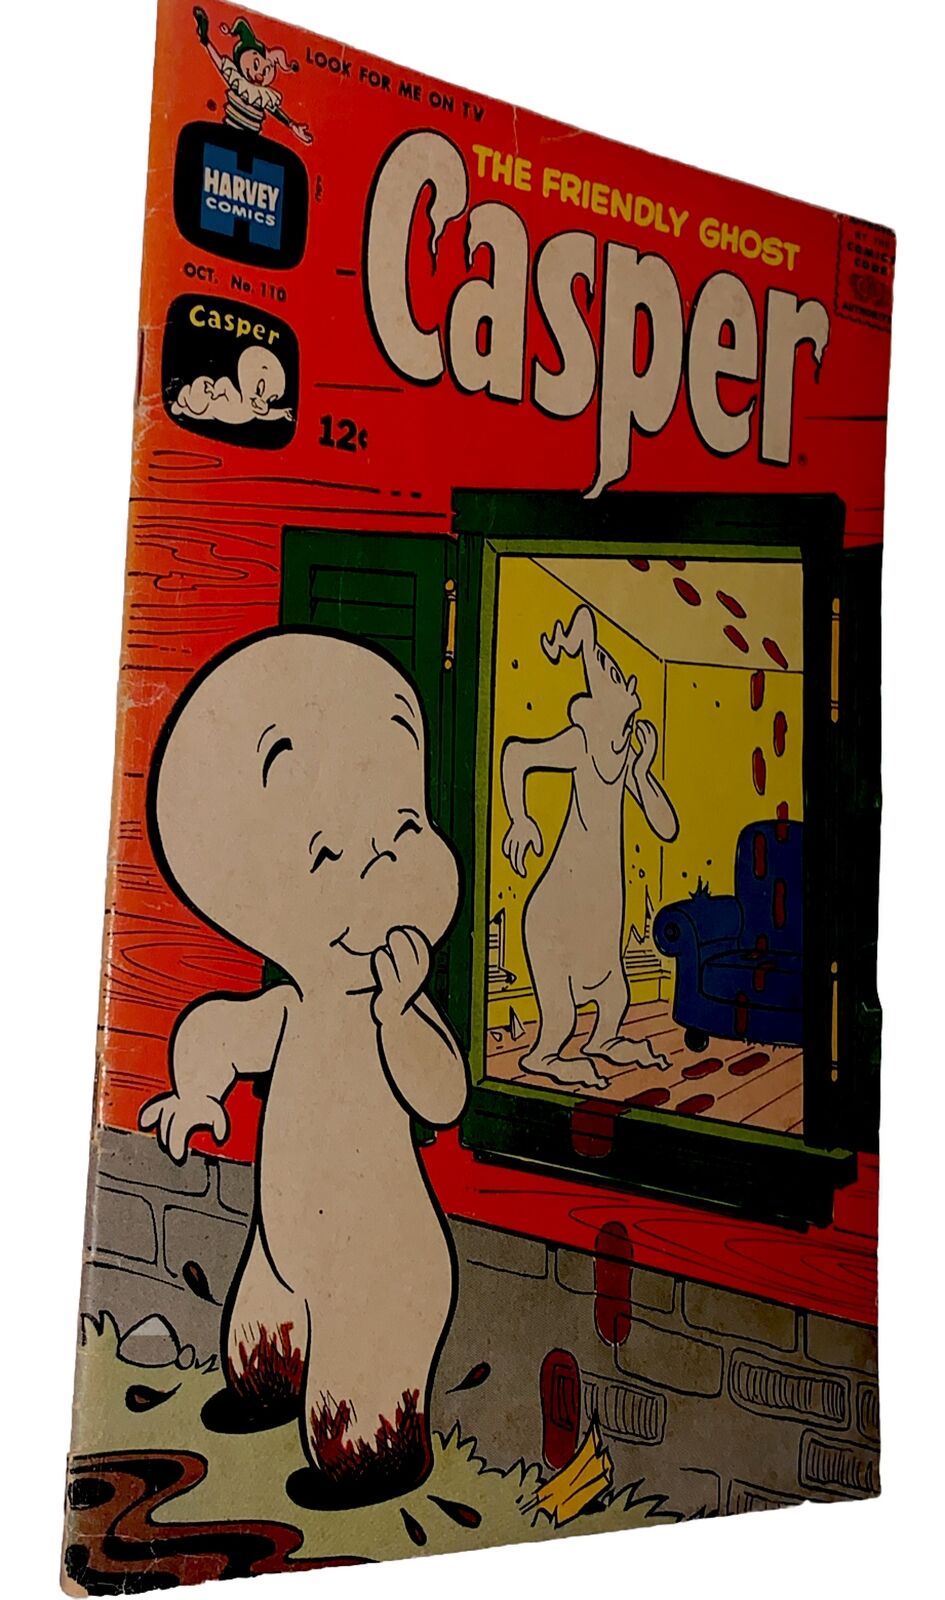 1967 CASPER THE FRIENDLY GHOST VOL 1 # 110 HARVEY 12 CENTS CARTOON COMICS